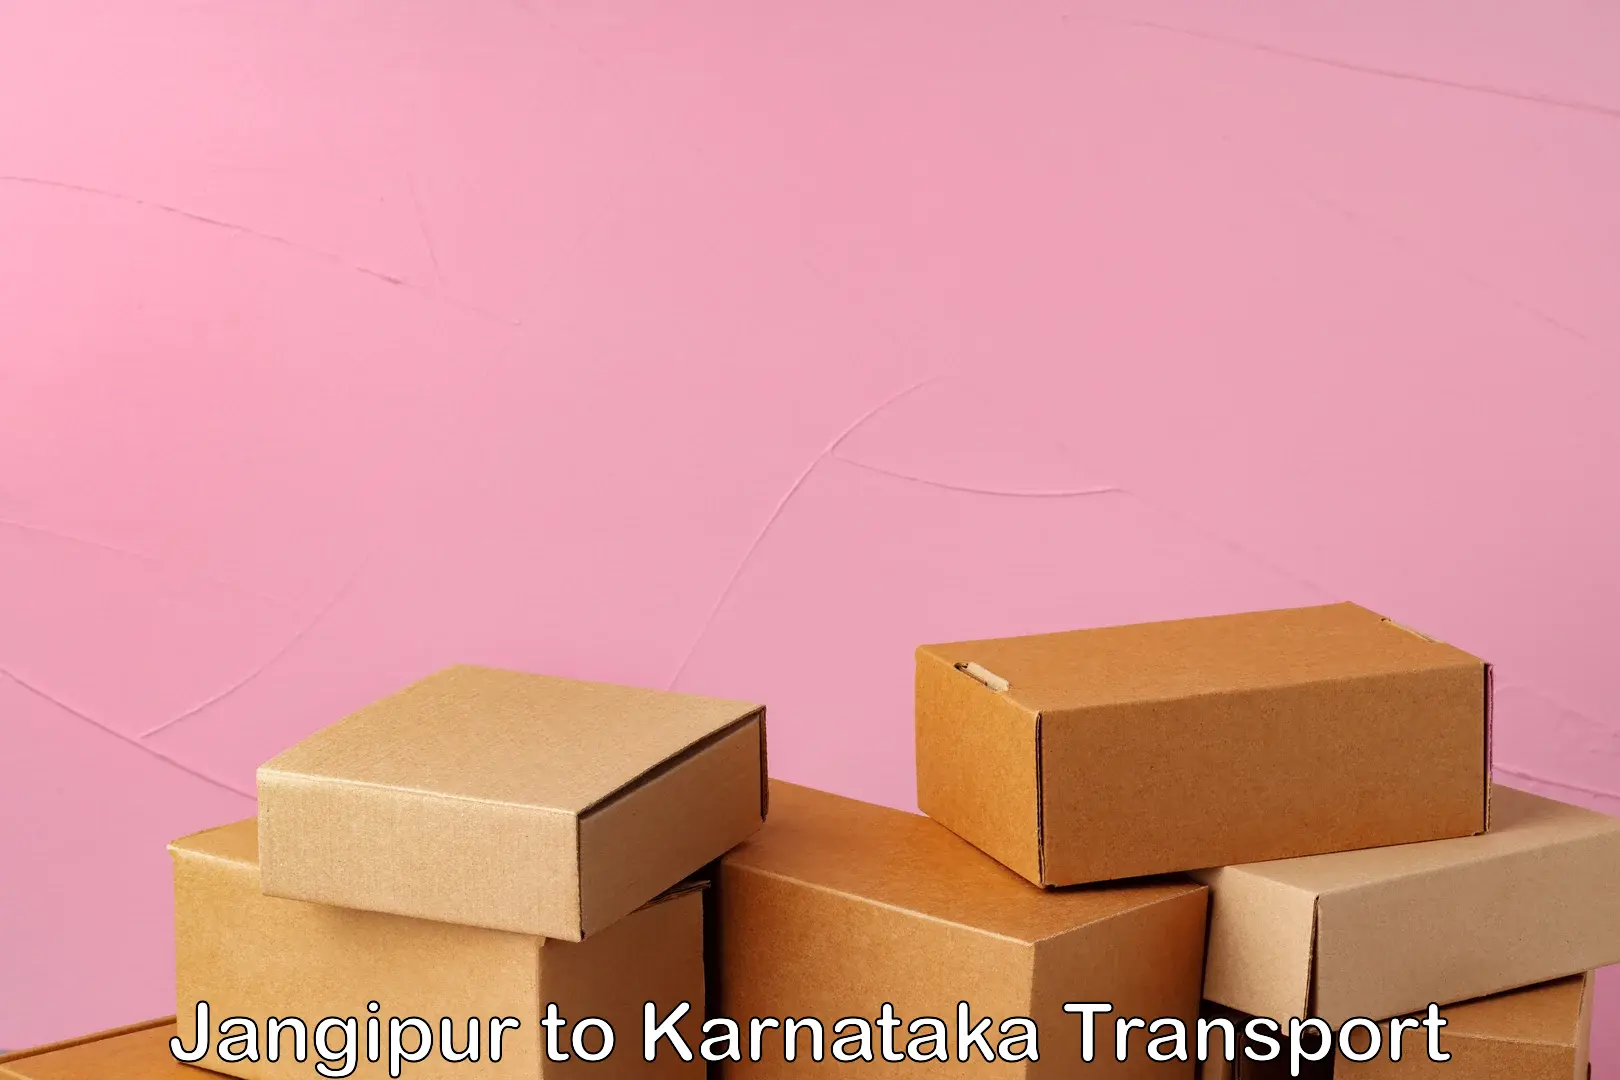 Online transport service Jangipur to Karnataka